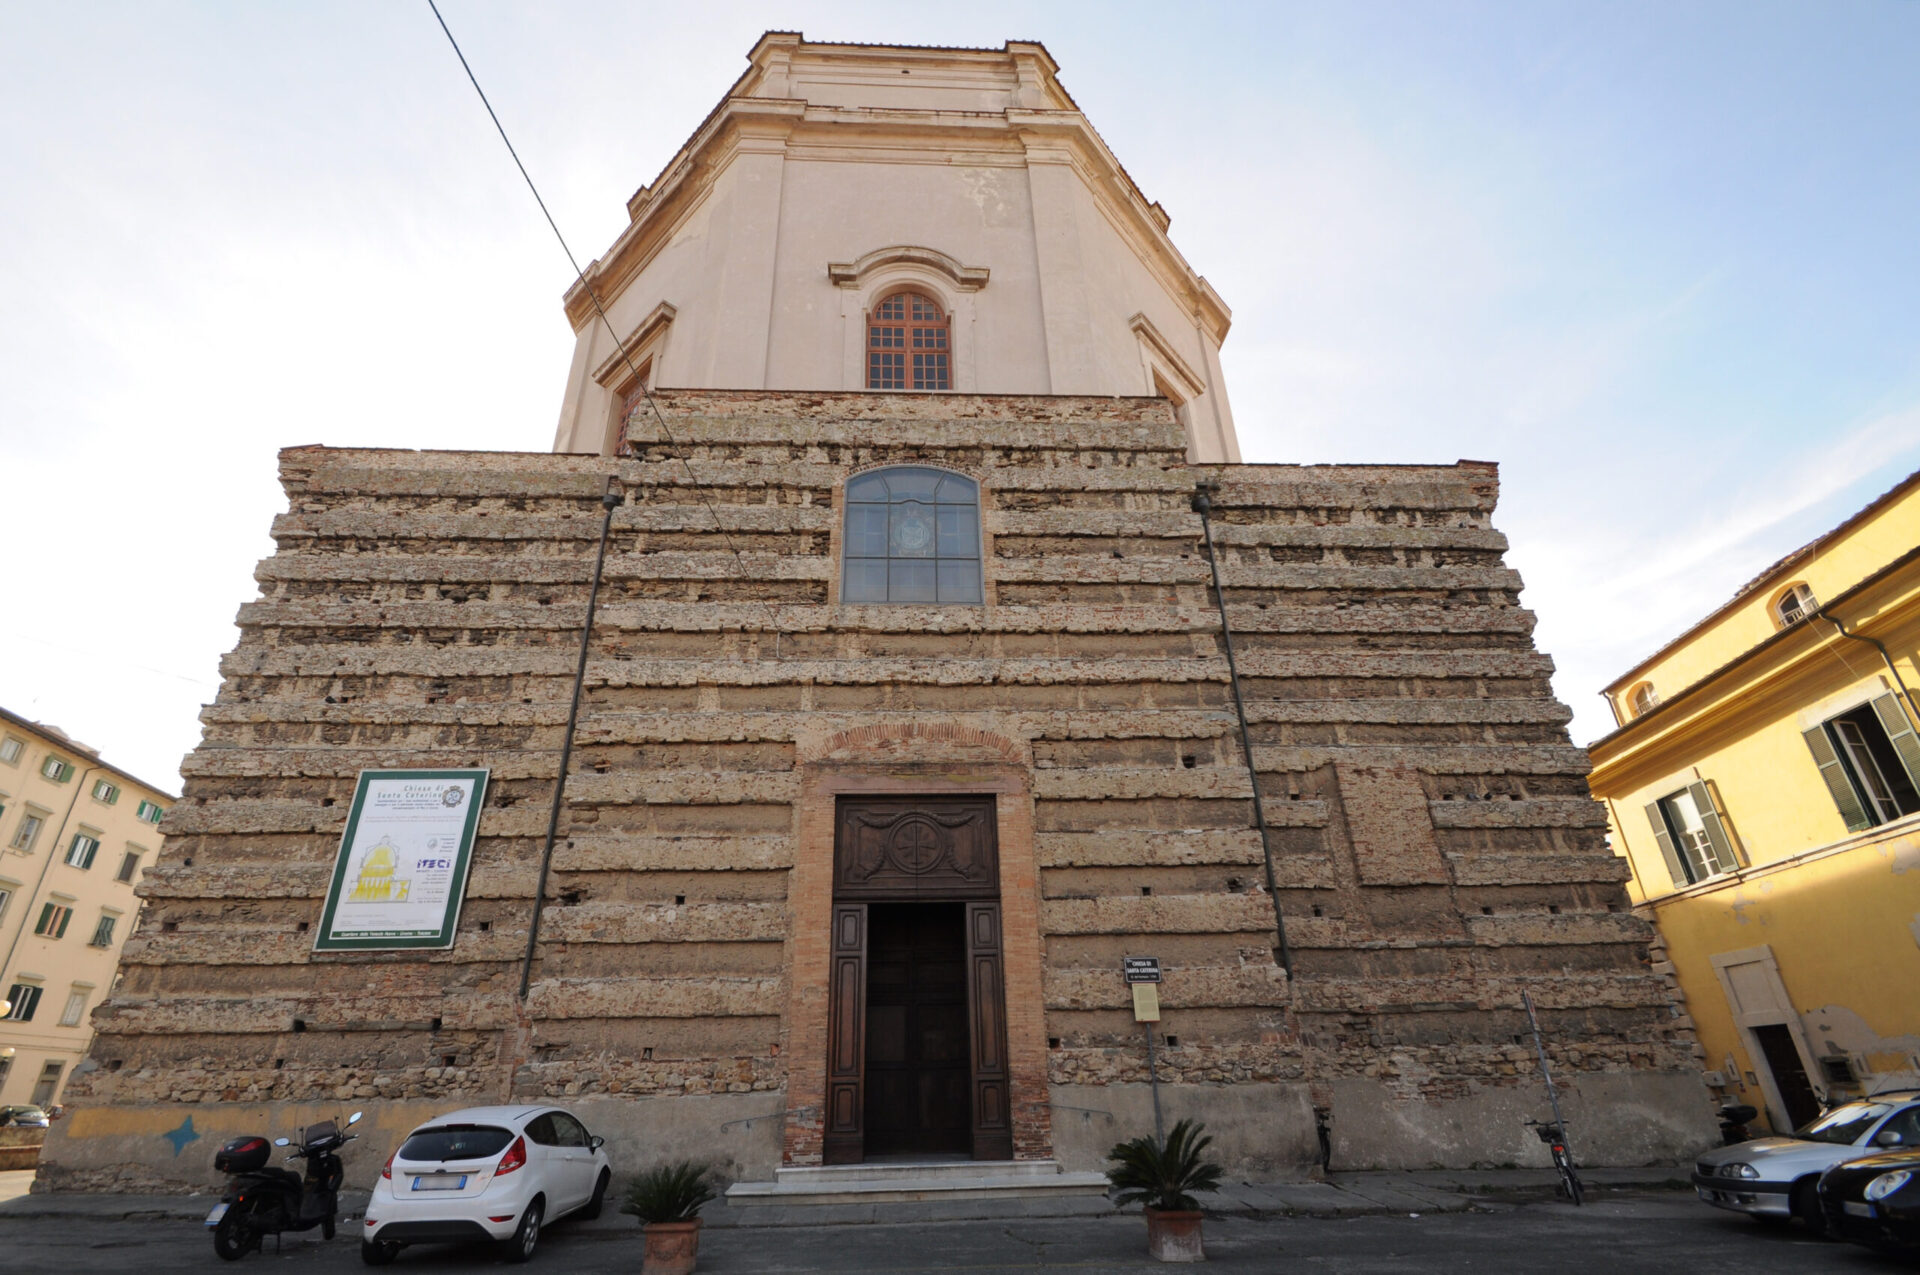 The church of Santa Caterina